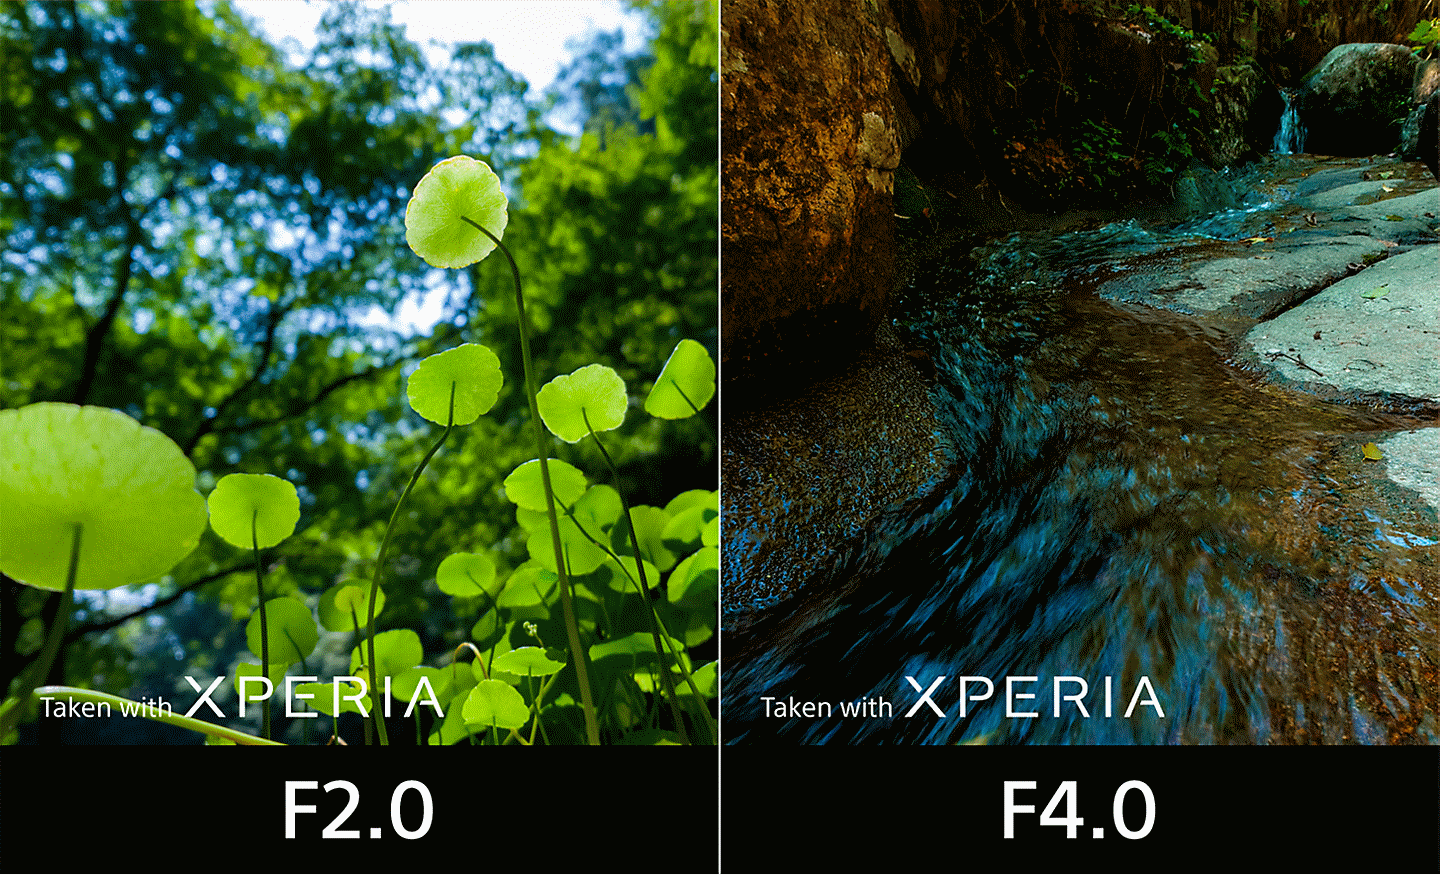 Ecran divizat în care se compară o imagine cu frunze realizată cu o diafragmă F2.0 și o imagine a unui pârâu fotografiat cu F4.0. Textul de pe imagini: "Realizat cu XPERIA".